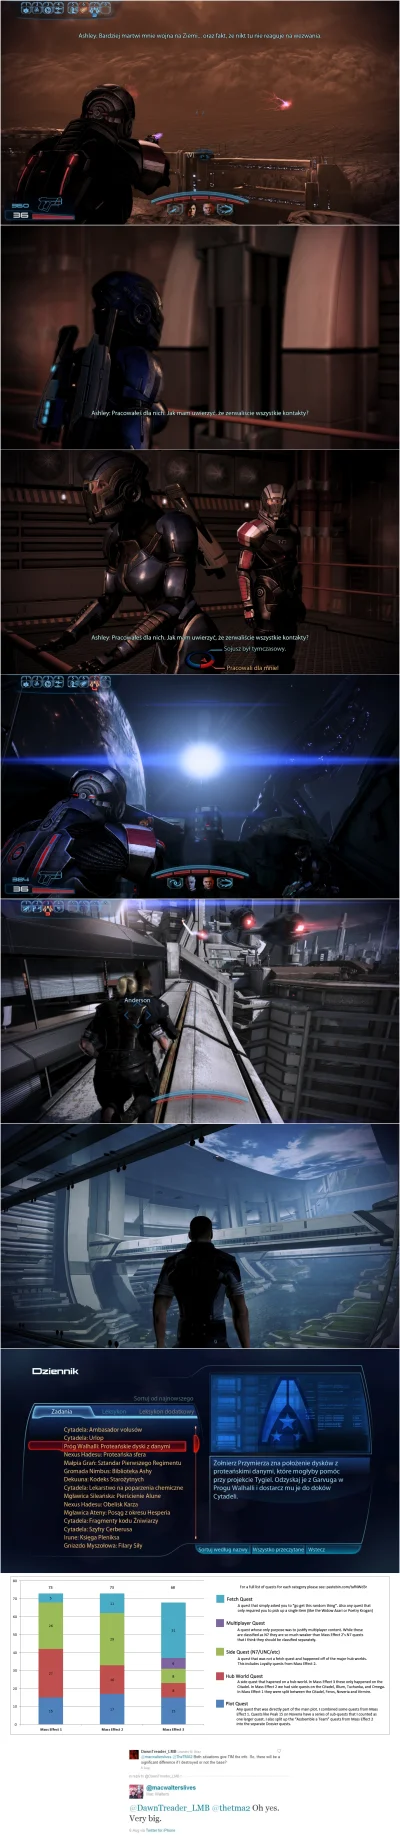 Lisaros - Mass Effect 3 i BioWare

Część 2

Poprzednie części:
pierwsza 

Kilk...